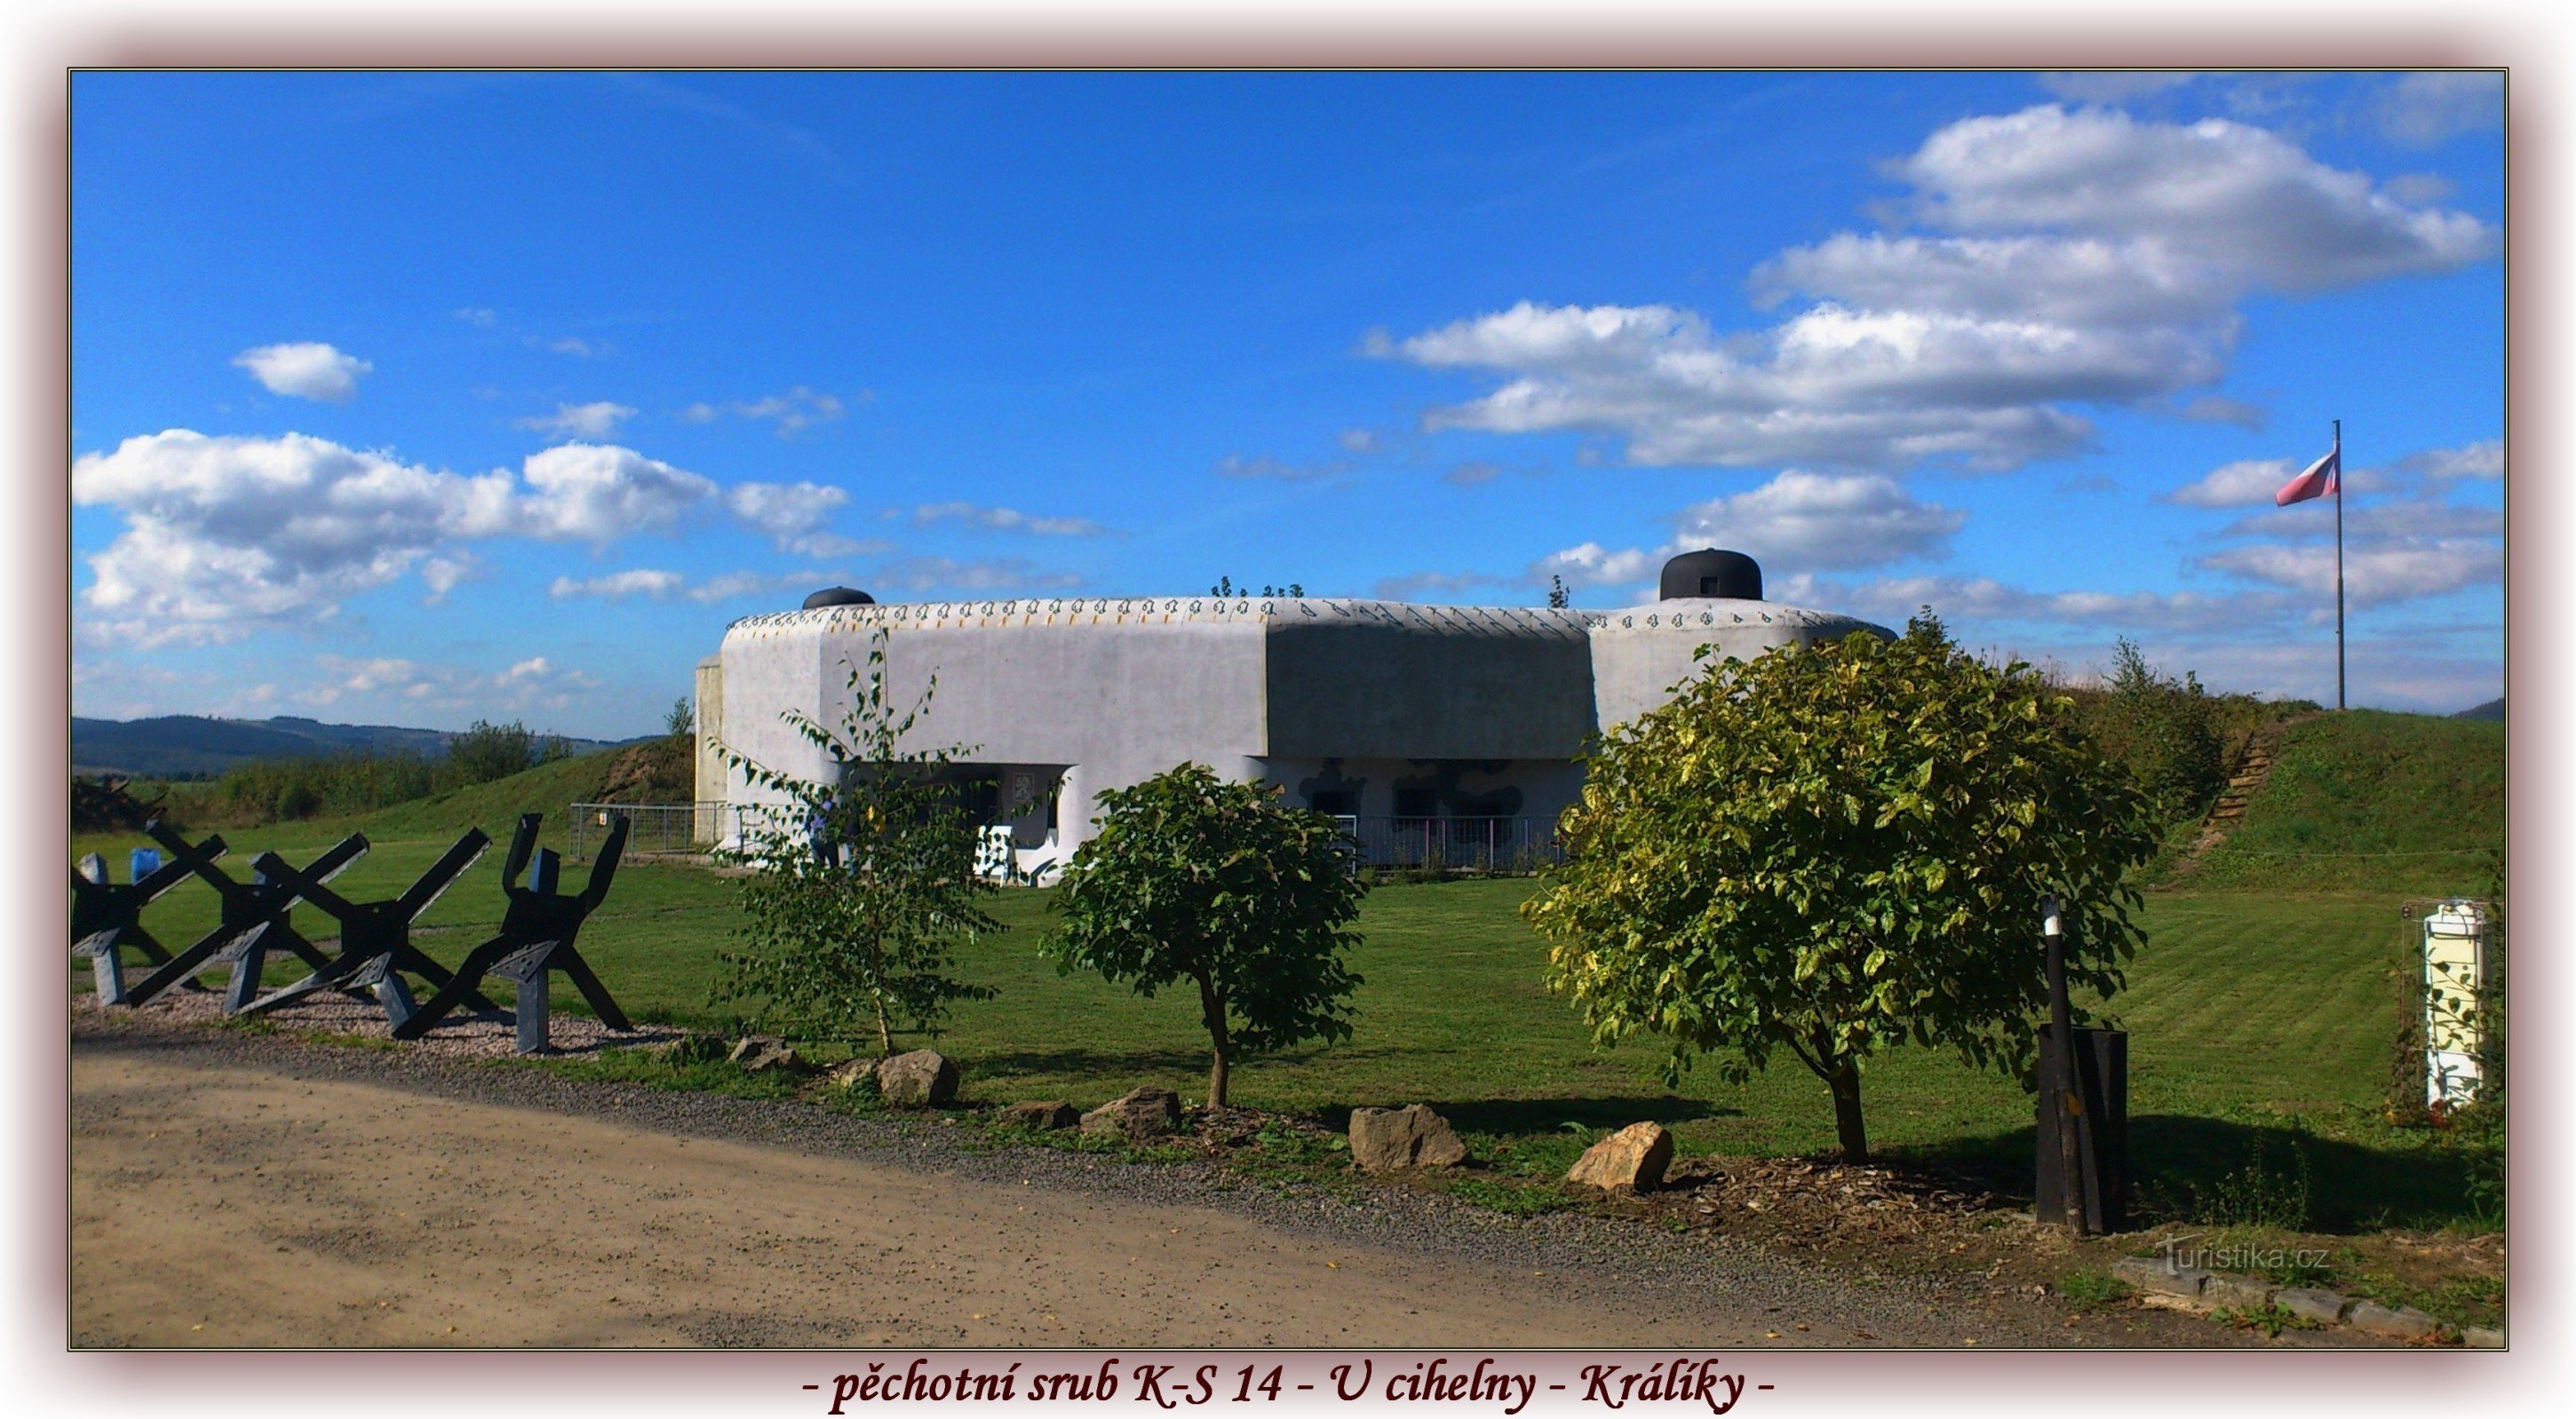 peça 14 museu das fortificações checoslovacas